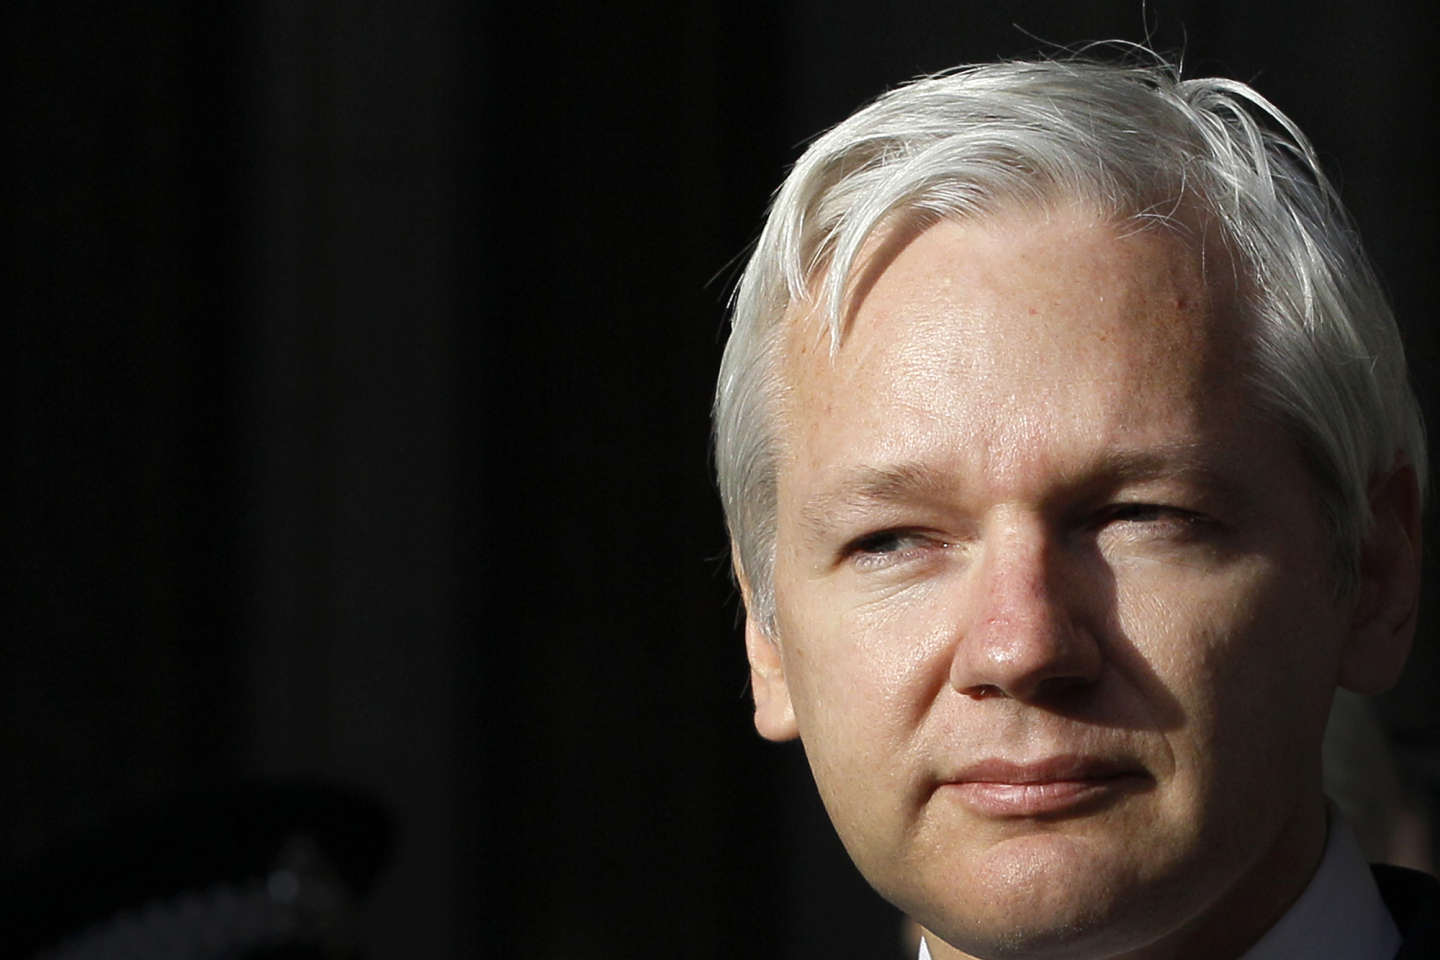 Londres approuve l’extradition de Julian Assange aux Etats-Unis